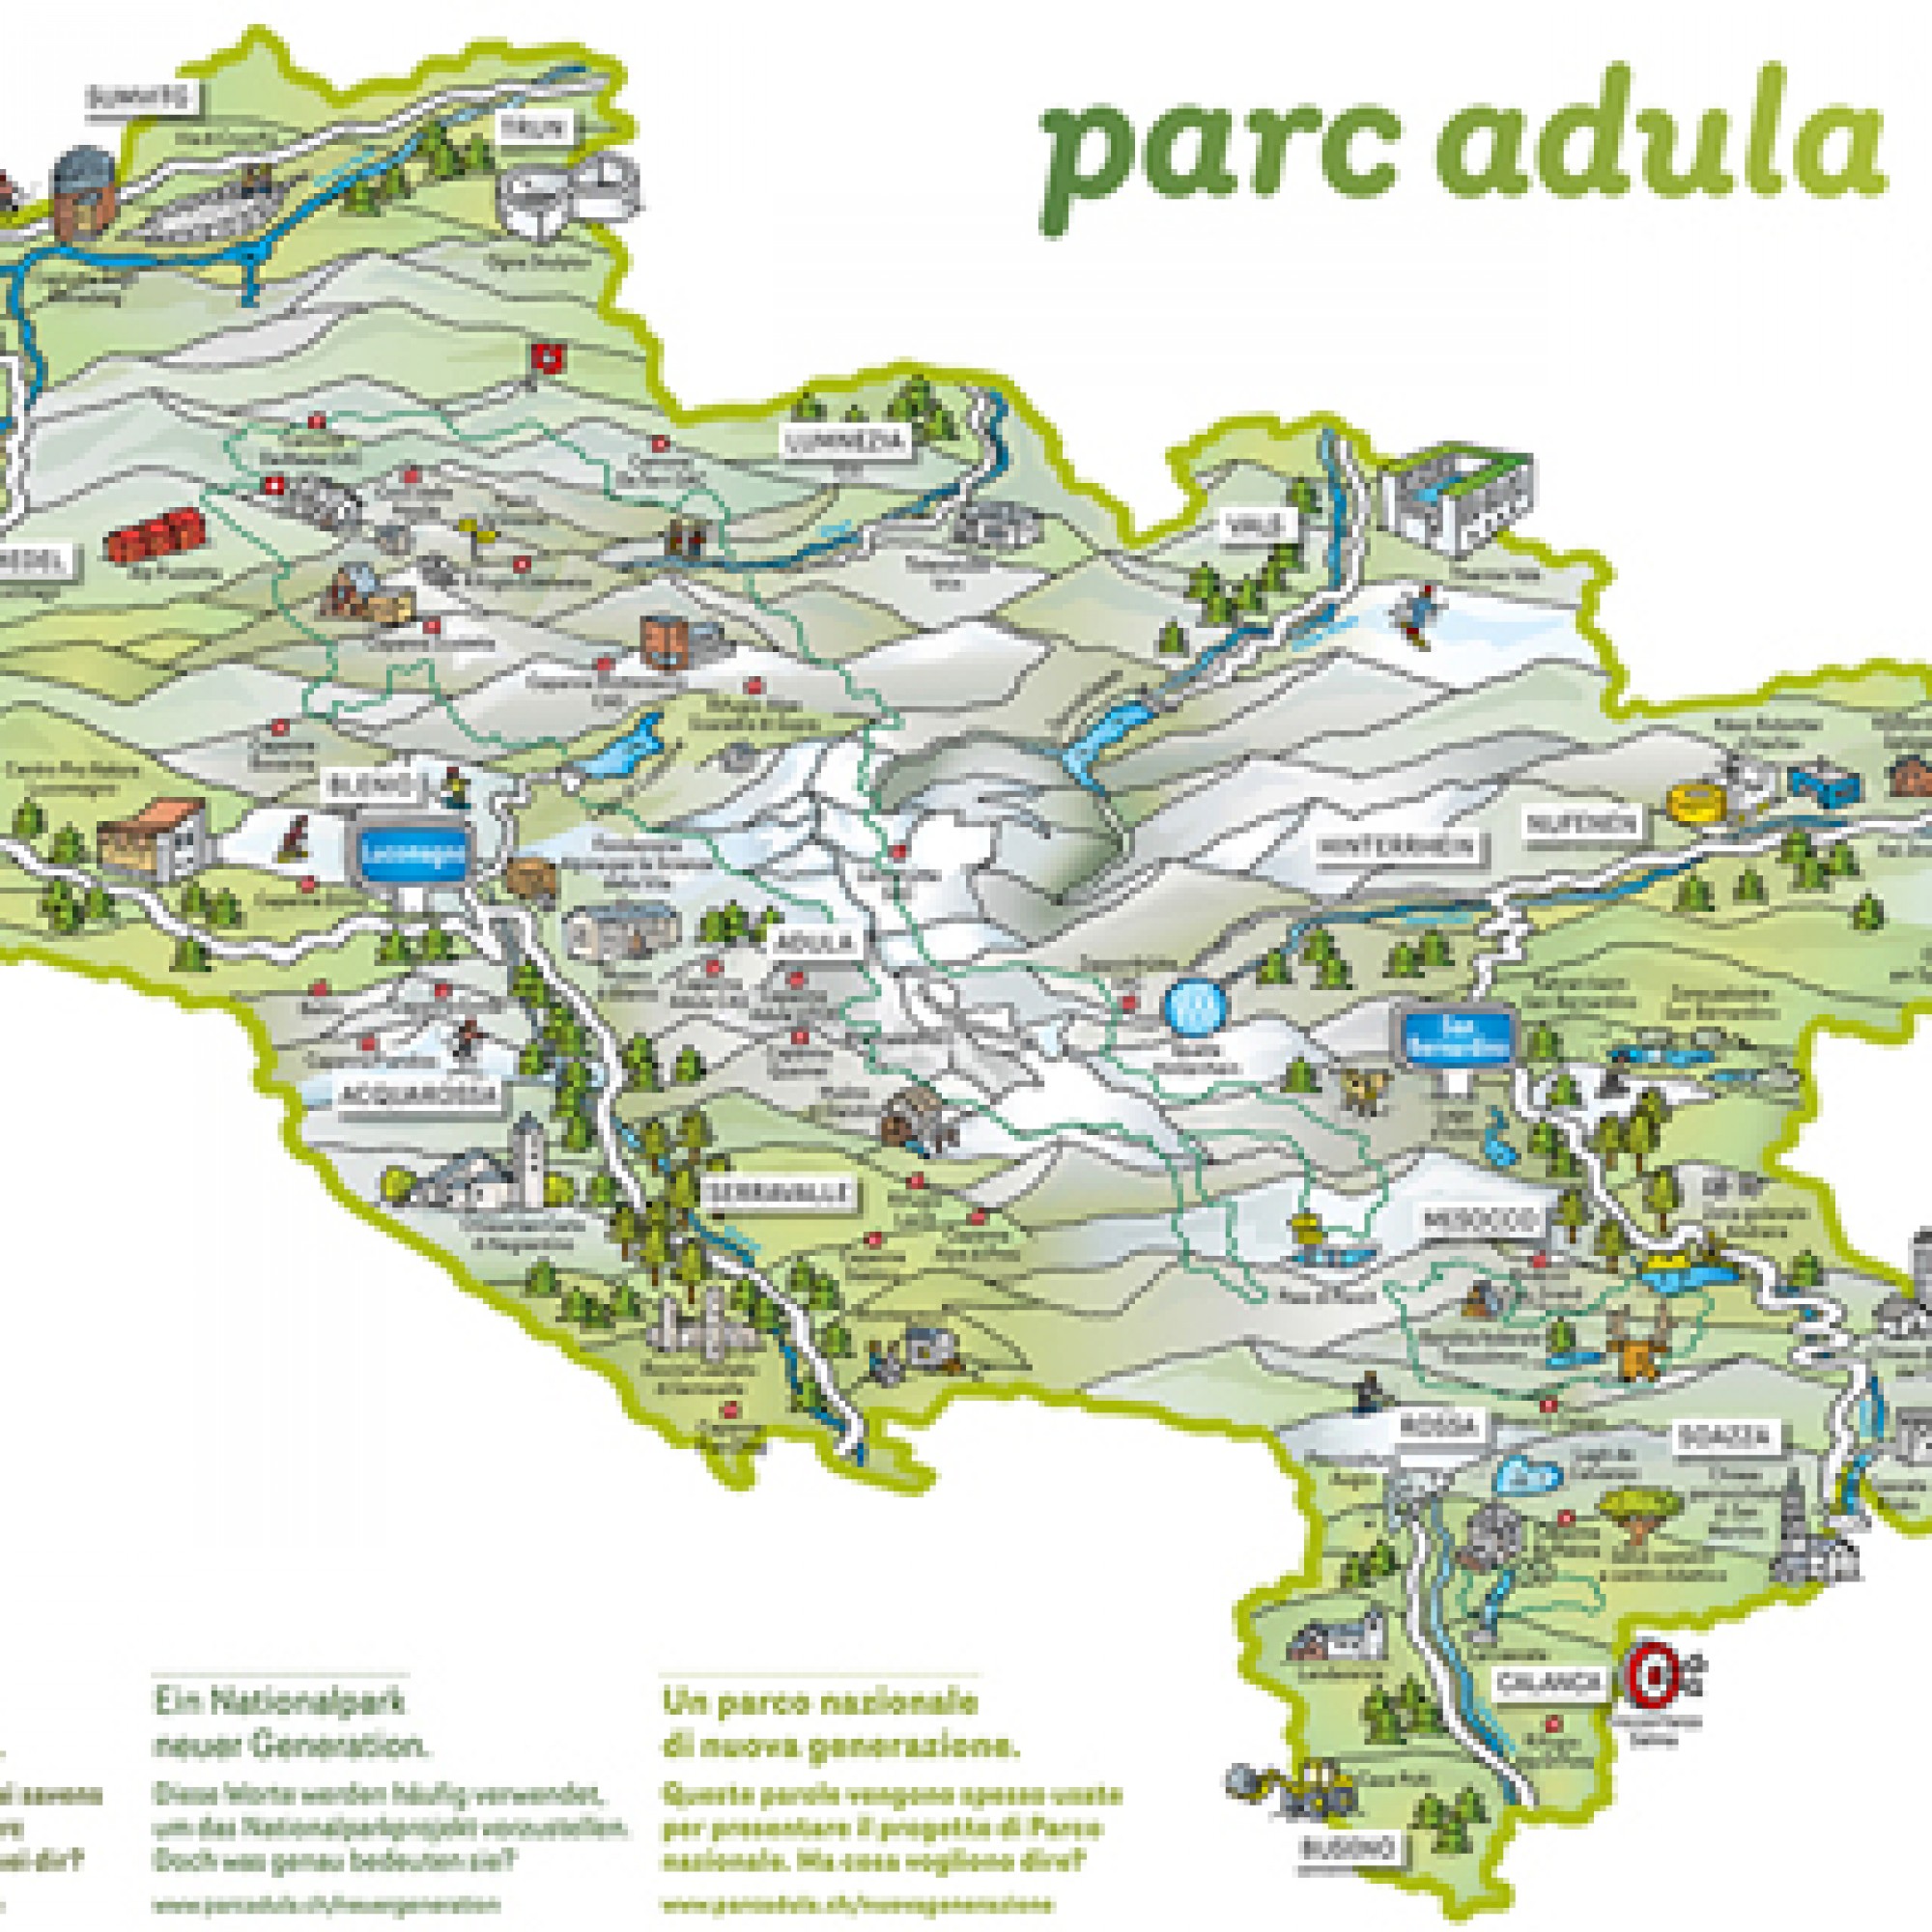 Karte des Parc Adula